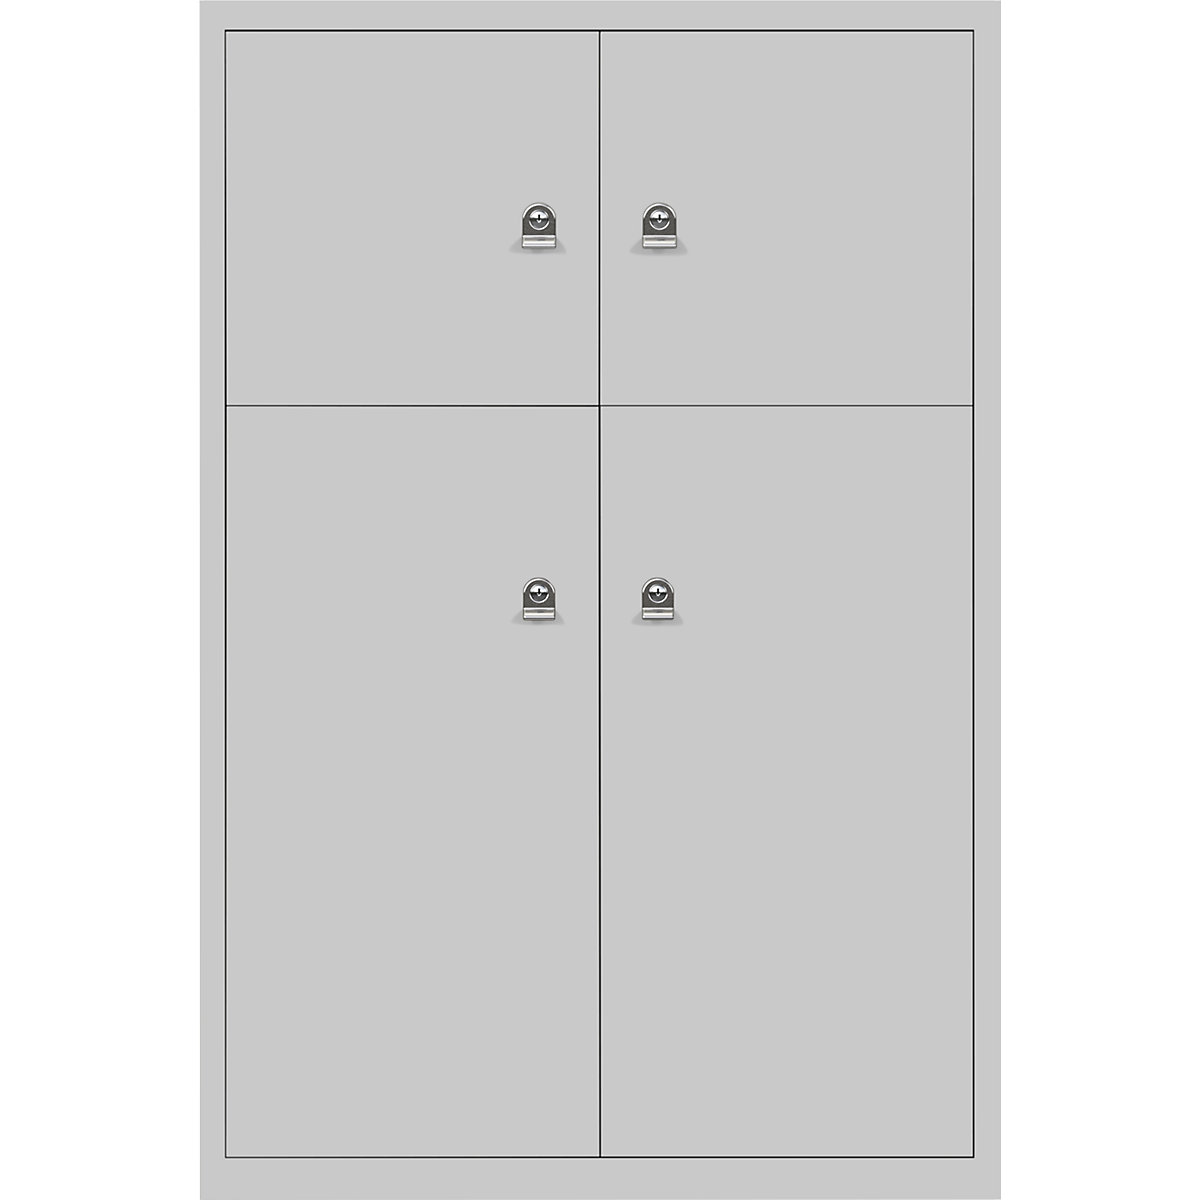 Omara s predelki z zaklepanjem LateralFile™ – BISLEY, 4 predelki z zaklepanjem, višina 2 x 375 mm, 2 x 755 mm, gosje sive barve-14